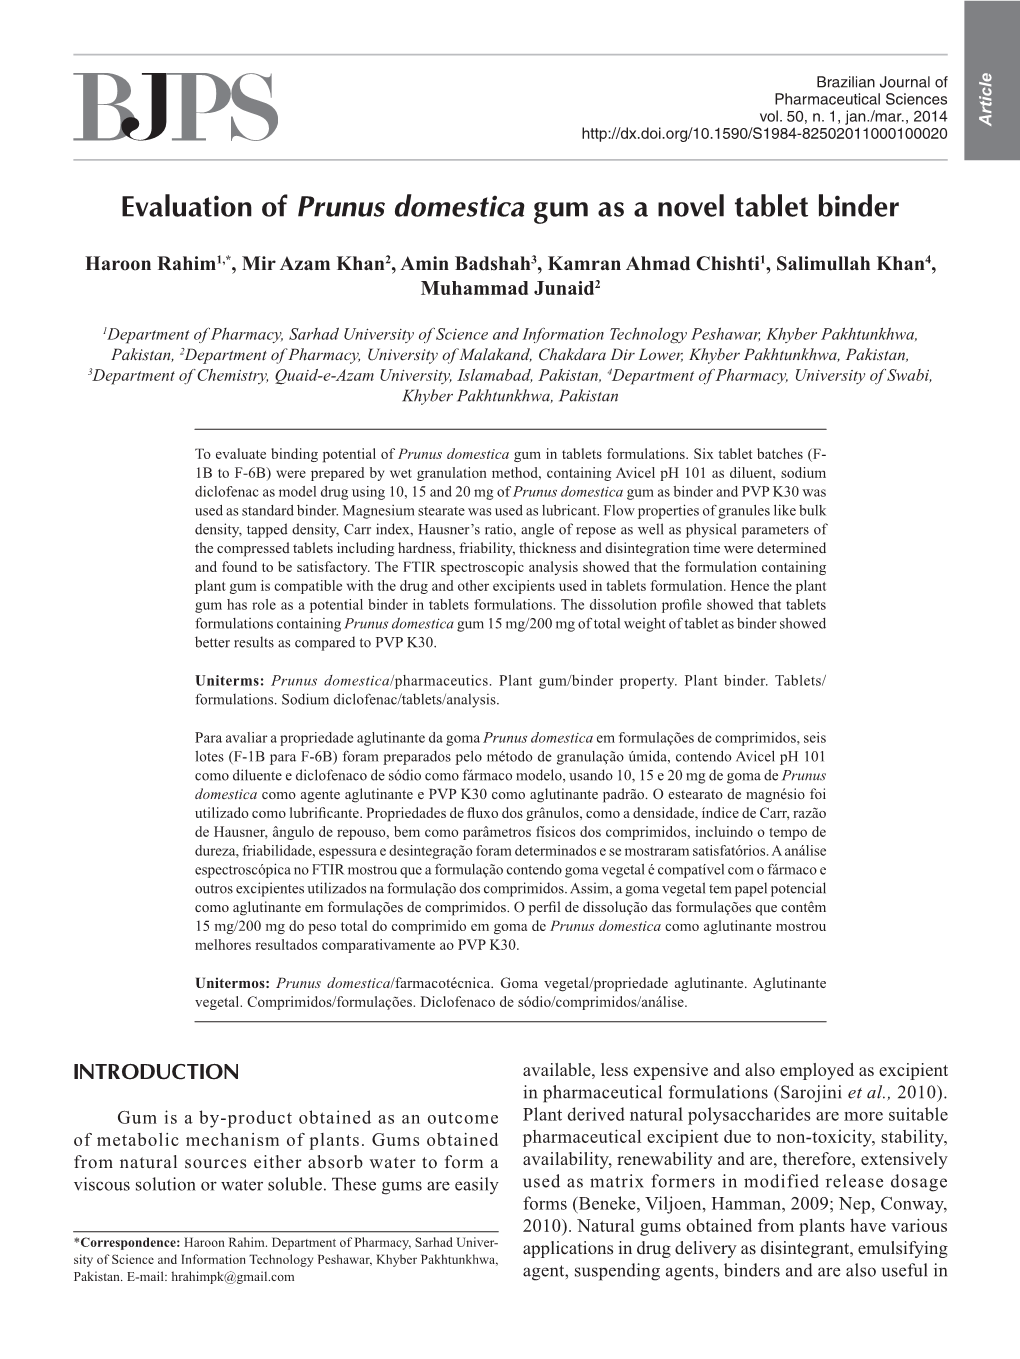 Evaluation of Prunus Domestica Gum As a Novel Tablet Binder